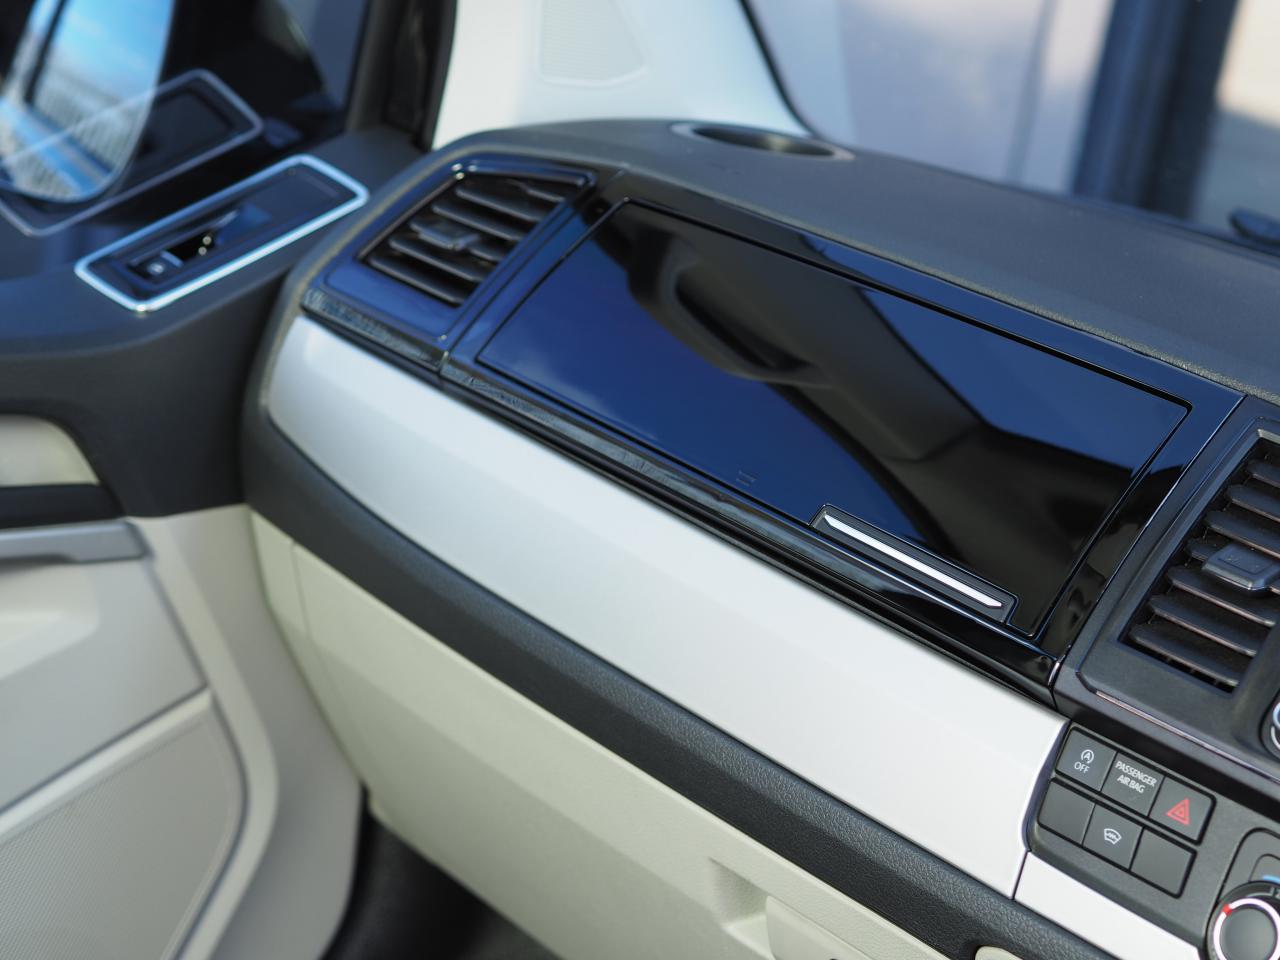 VW T6 Transporter dashboardkastje Comfort Dash Conversie Piano Zwart